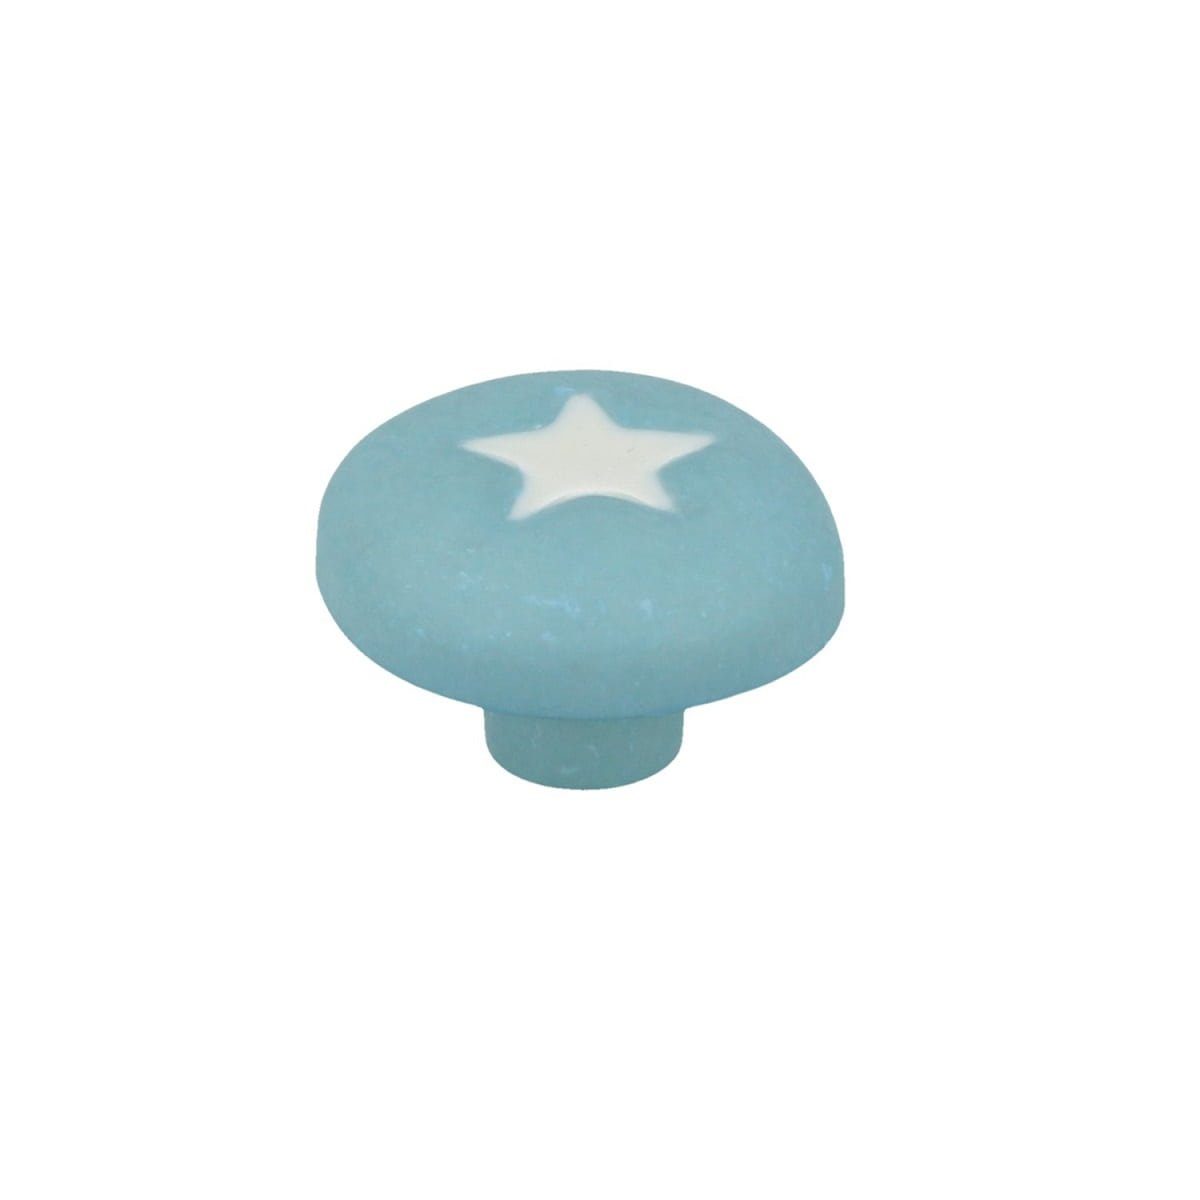 MS Beschläge Möbelknopf Möbelknopf Kinderzimmer Pilz Stern mit Blauer